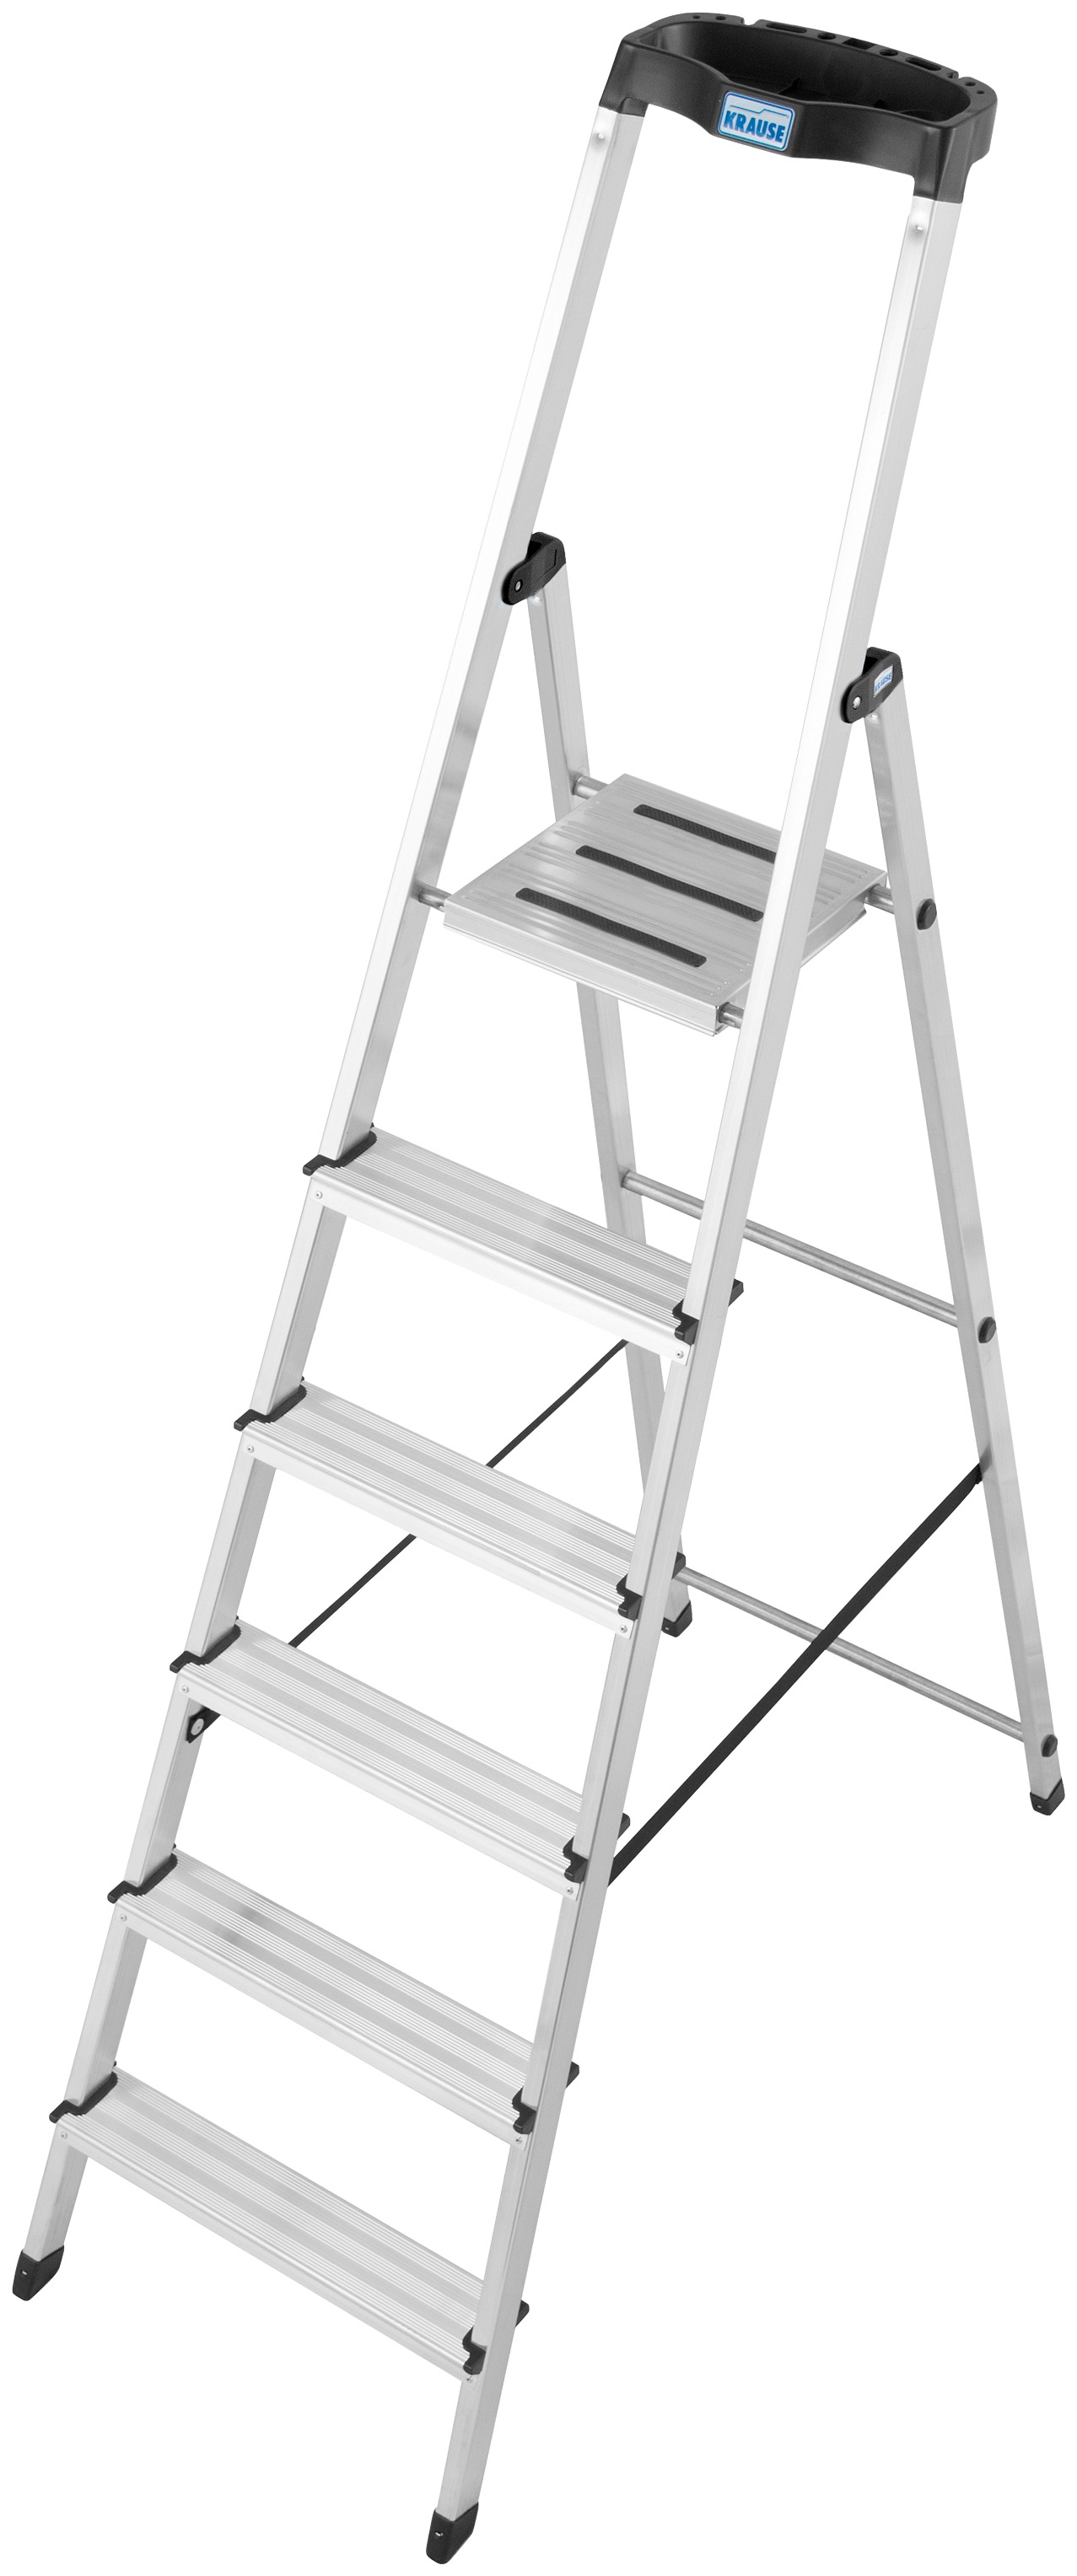 KRAUSE Stehleiter "Safety", Aluminium, 1x6 Stufen, Arbeitshöhe ca. 325 cm